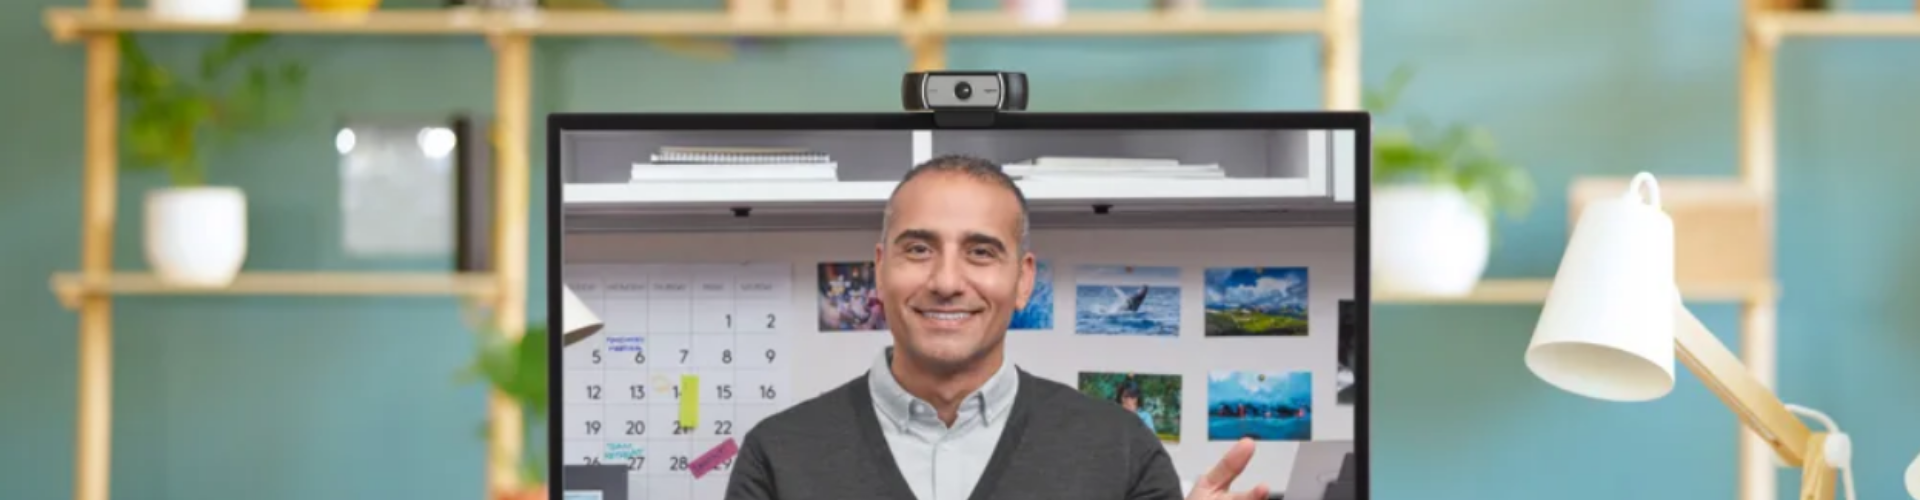 C930E – Webcam hội nghị giá rẻ, được ưa chuộng năm 2020